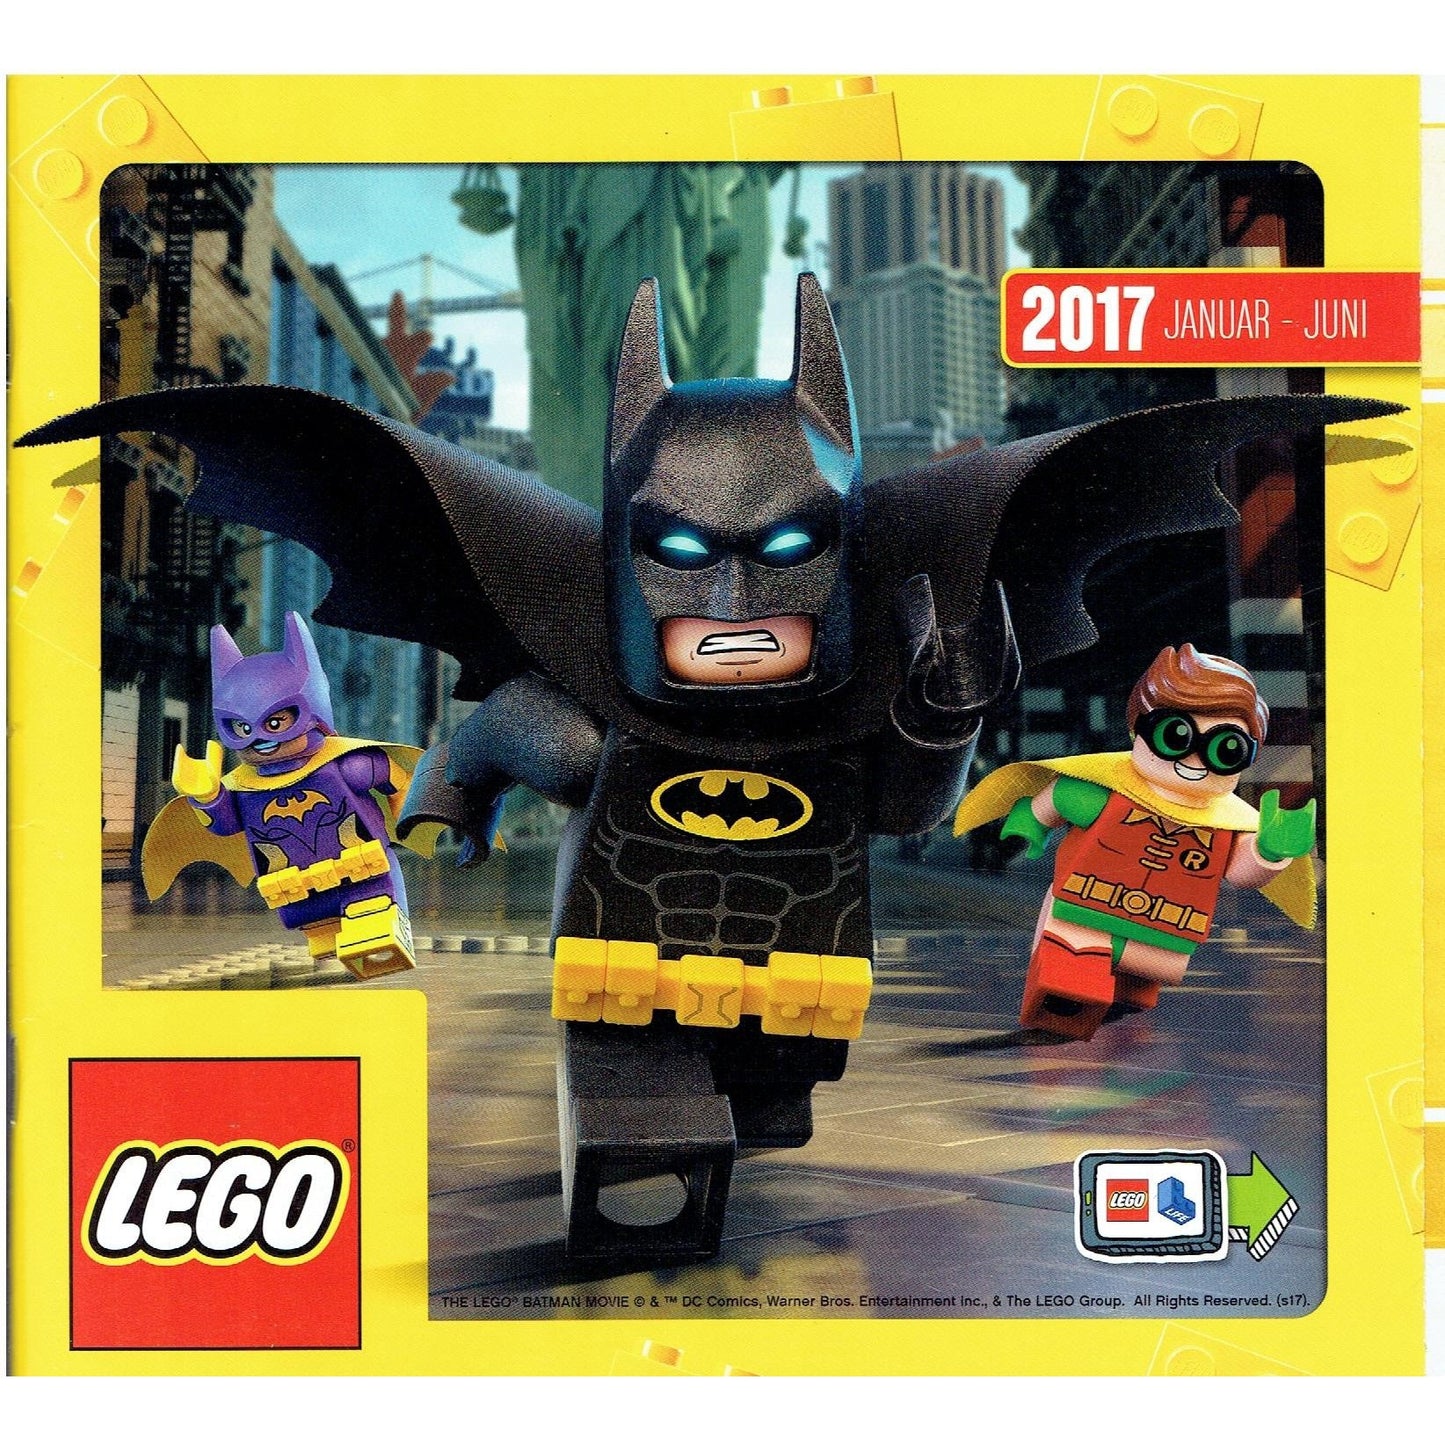 LEGO Katalog Januar - Juni 2017